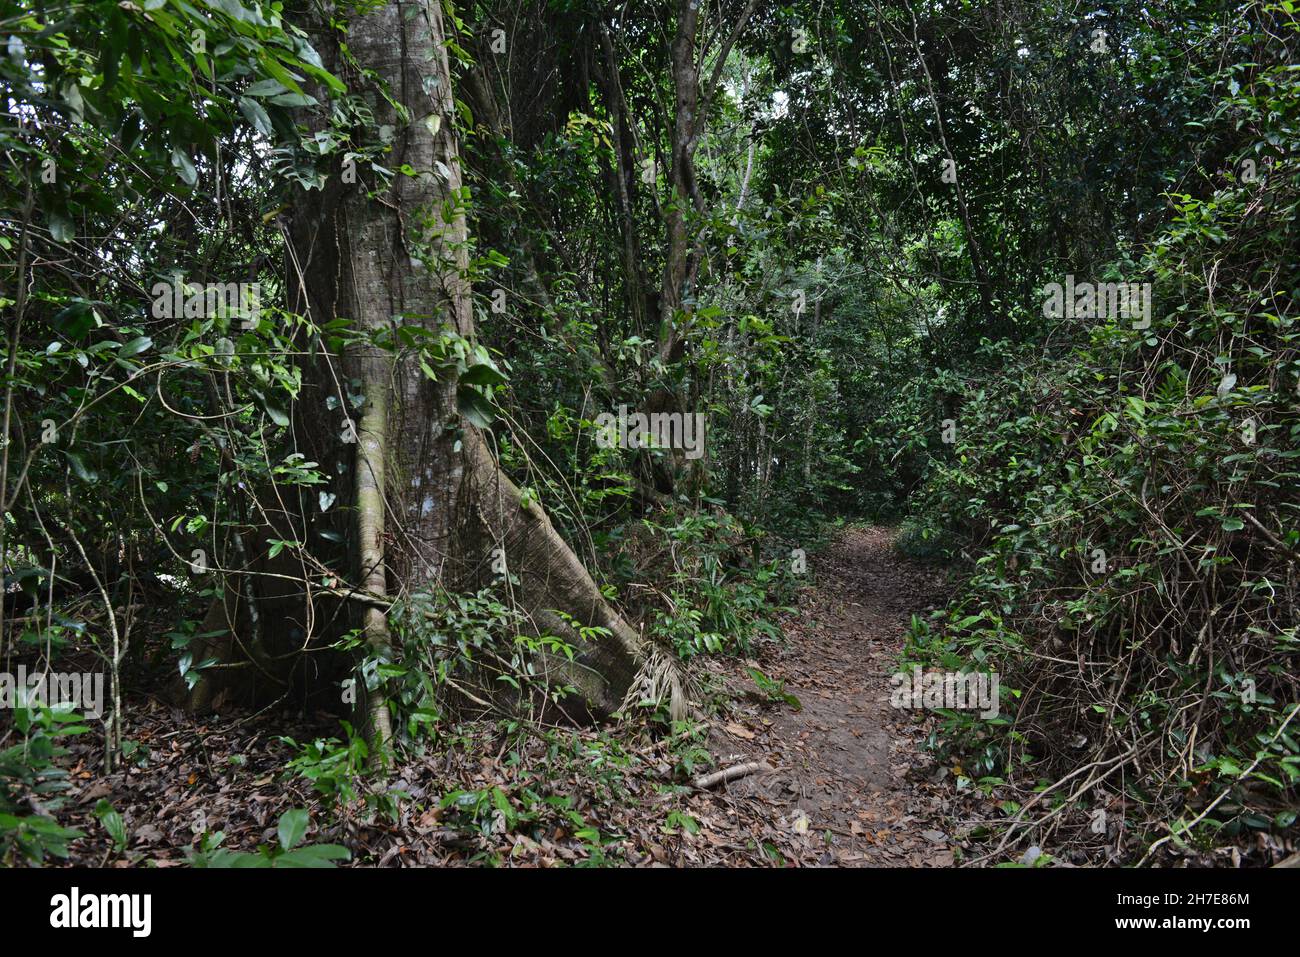 L'arbre Samaruma (Ceiba Pentandra) et un chemin dans la forêt amazonienne.Barcarena, Etat de Pará Brésil Banque D'Images